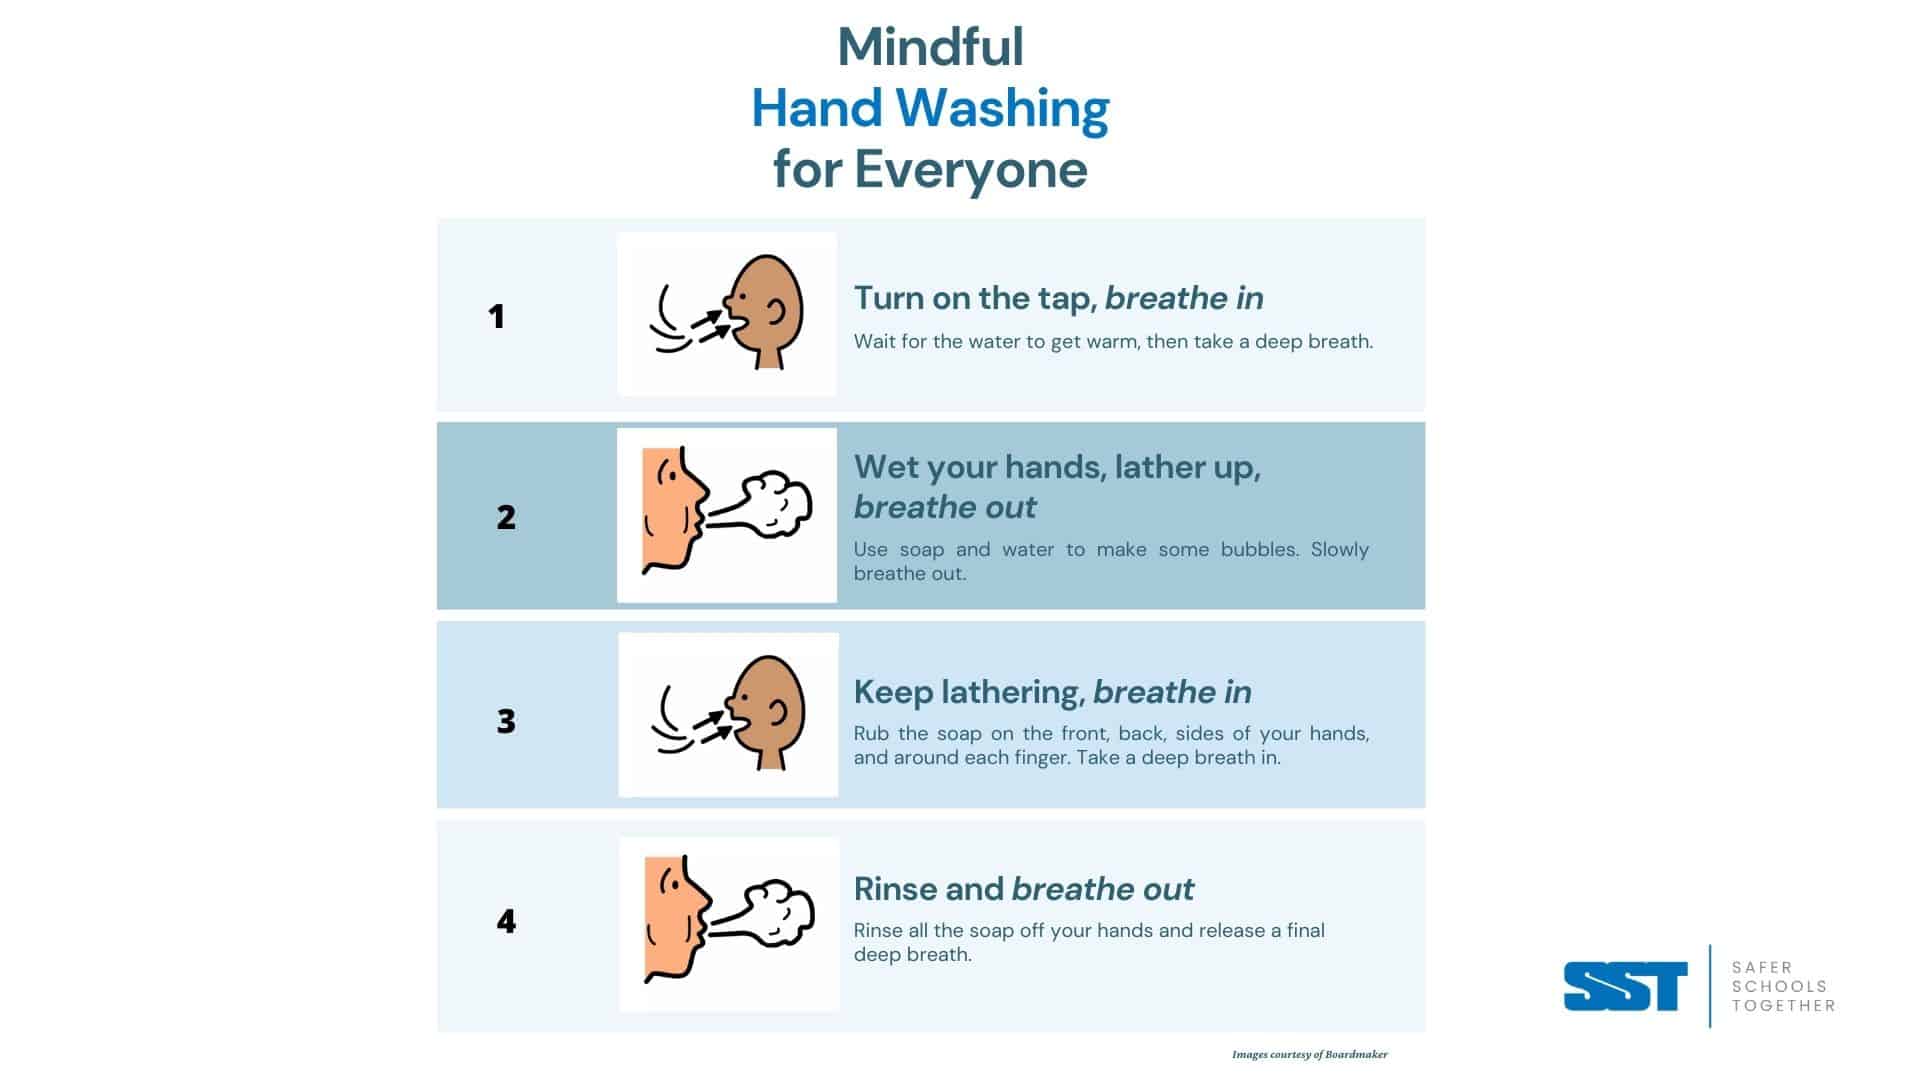 Mindful Hand Washing image